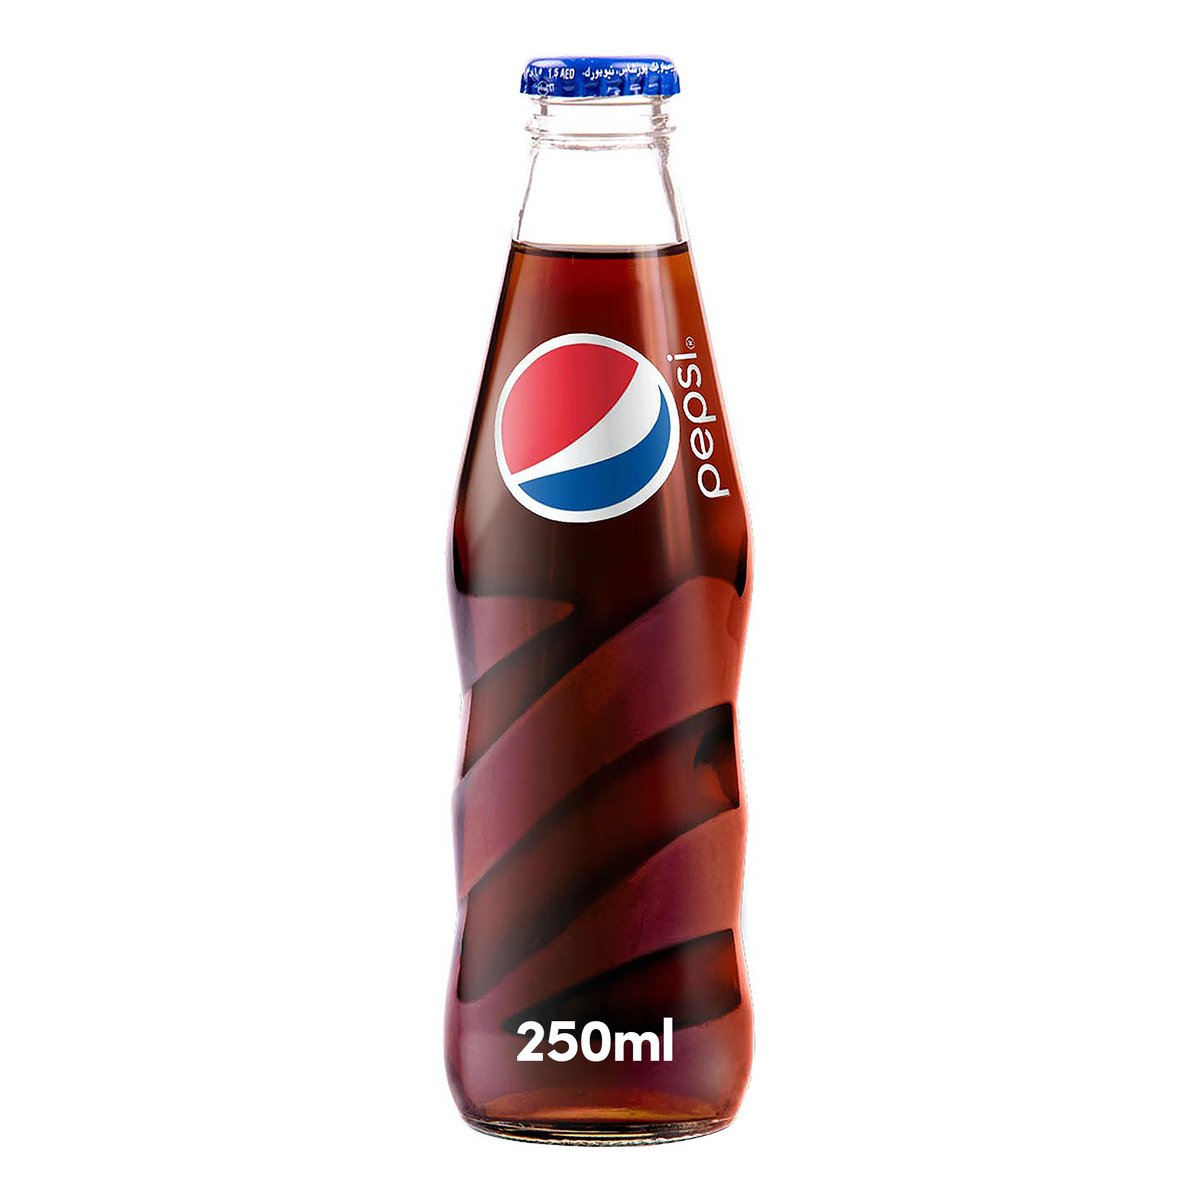 اشتري قم بشراء بيبسي مشروب غازي عبوة زجاجية 250 مل Online at Best Price من الموقع - من لولو هايبر ماركت Cola Bottle في الامارات